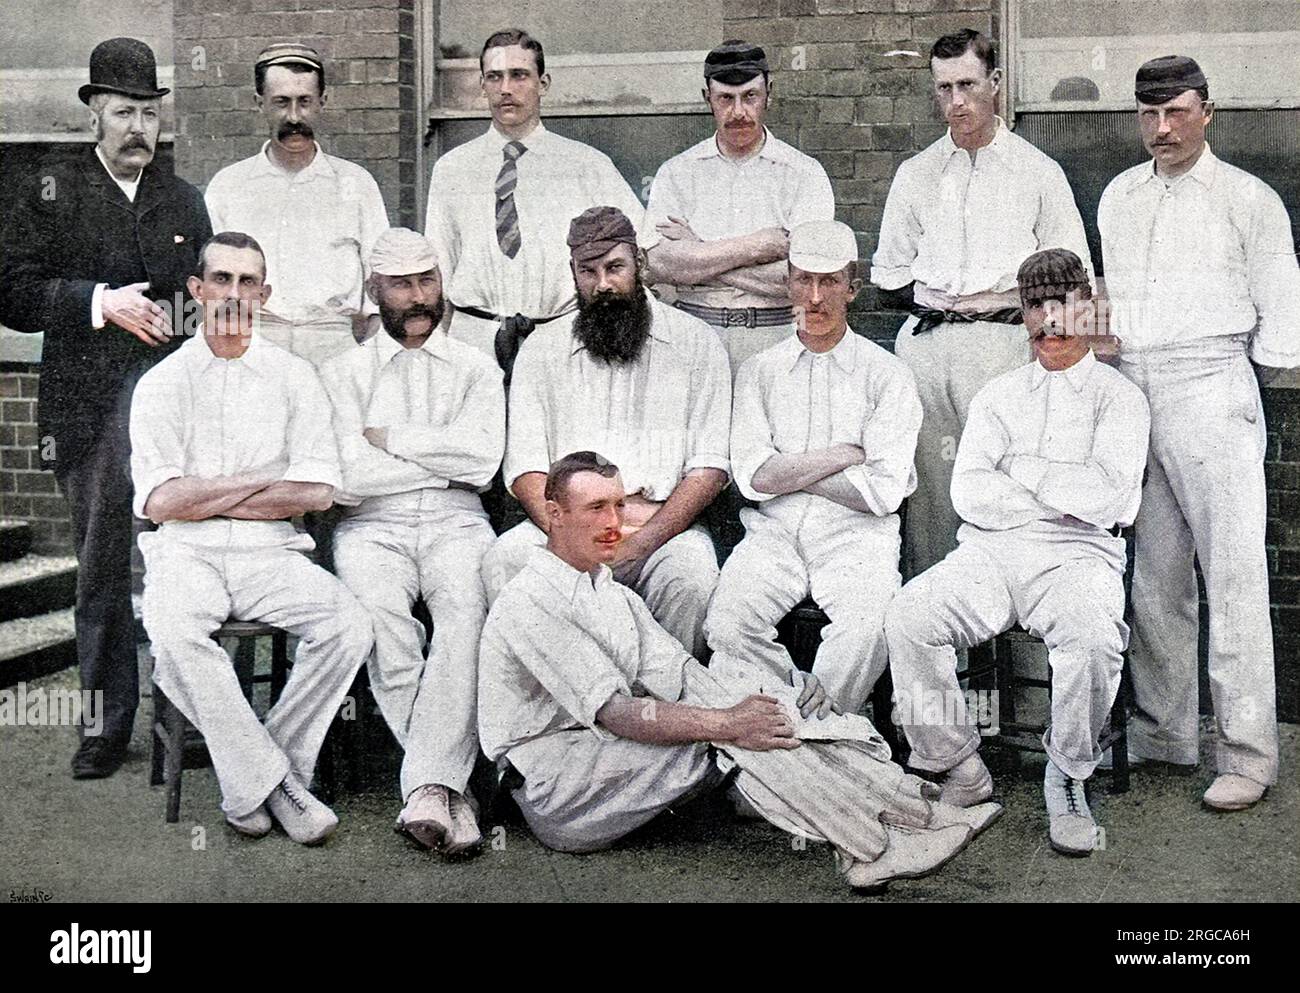 Photographie de l'équipe de cricket du comté de Gloucestershire pour la saison 1892. Rangée arrière, de gauche à droite : J.Smith (scorer), E. Sainsbury, S.A.P. Kitcat, Roberts, Murch, Painter. Rangée du milieu, de gauche à droite : capitaine A.H. Luard, E.M. Grace, Dr W.G. Grace (capitaine), Woof, O.G. Radcliffe. Rangée avant : planche. Banque D'Images